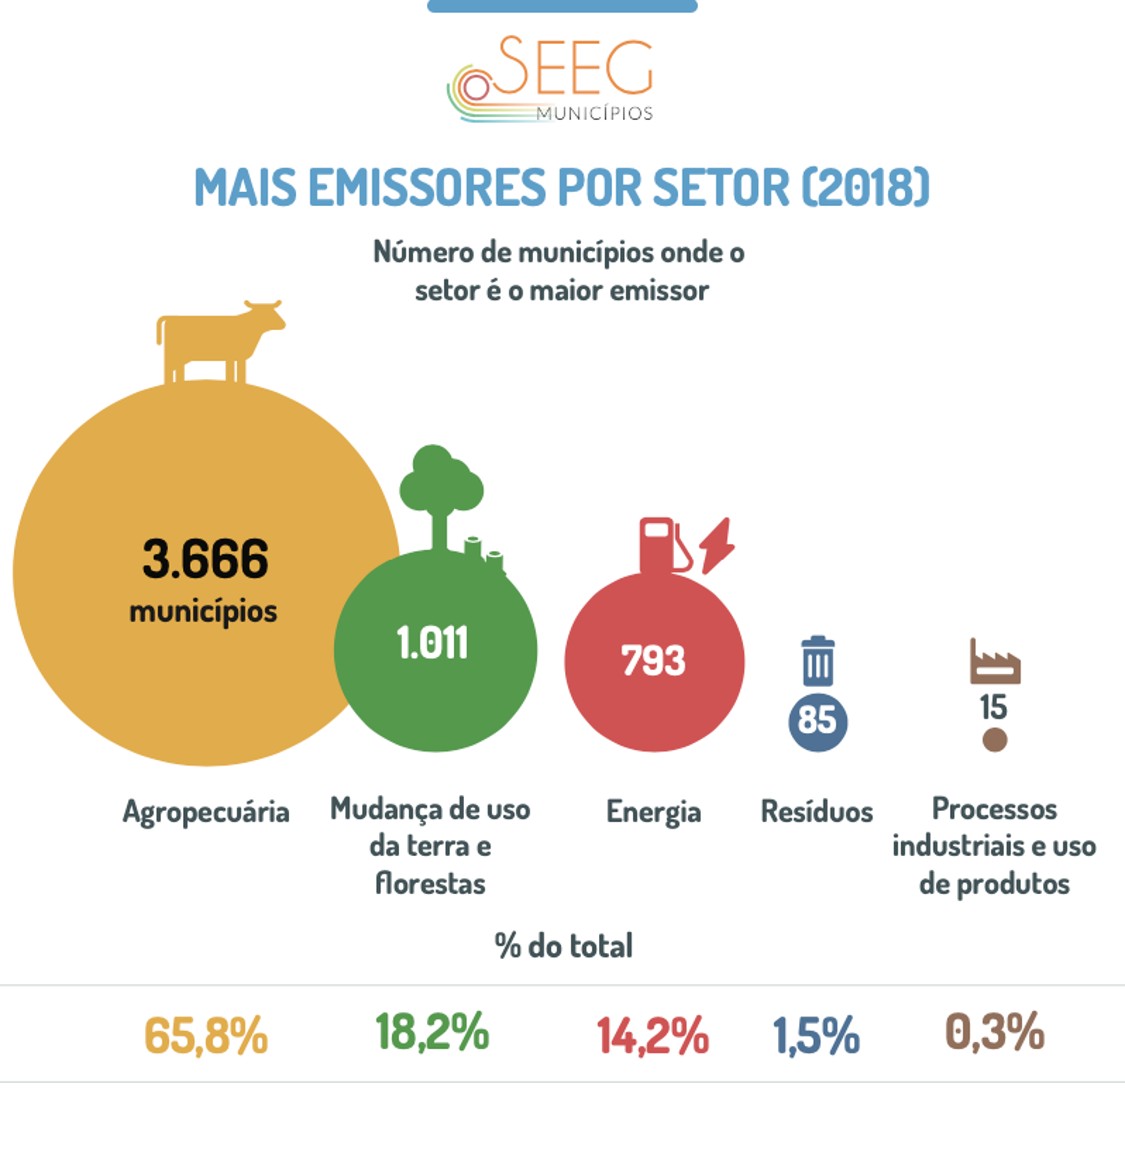 Divisão de municípios emissores de gases de efeito estufa por setor (Foto: SEEG Municípios)